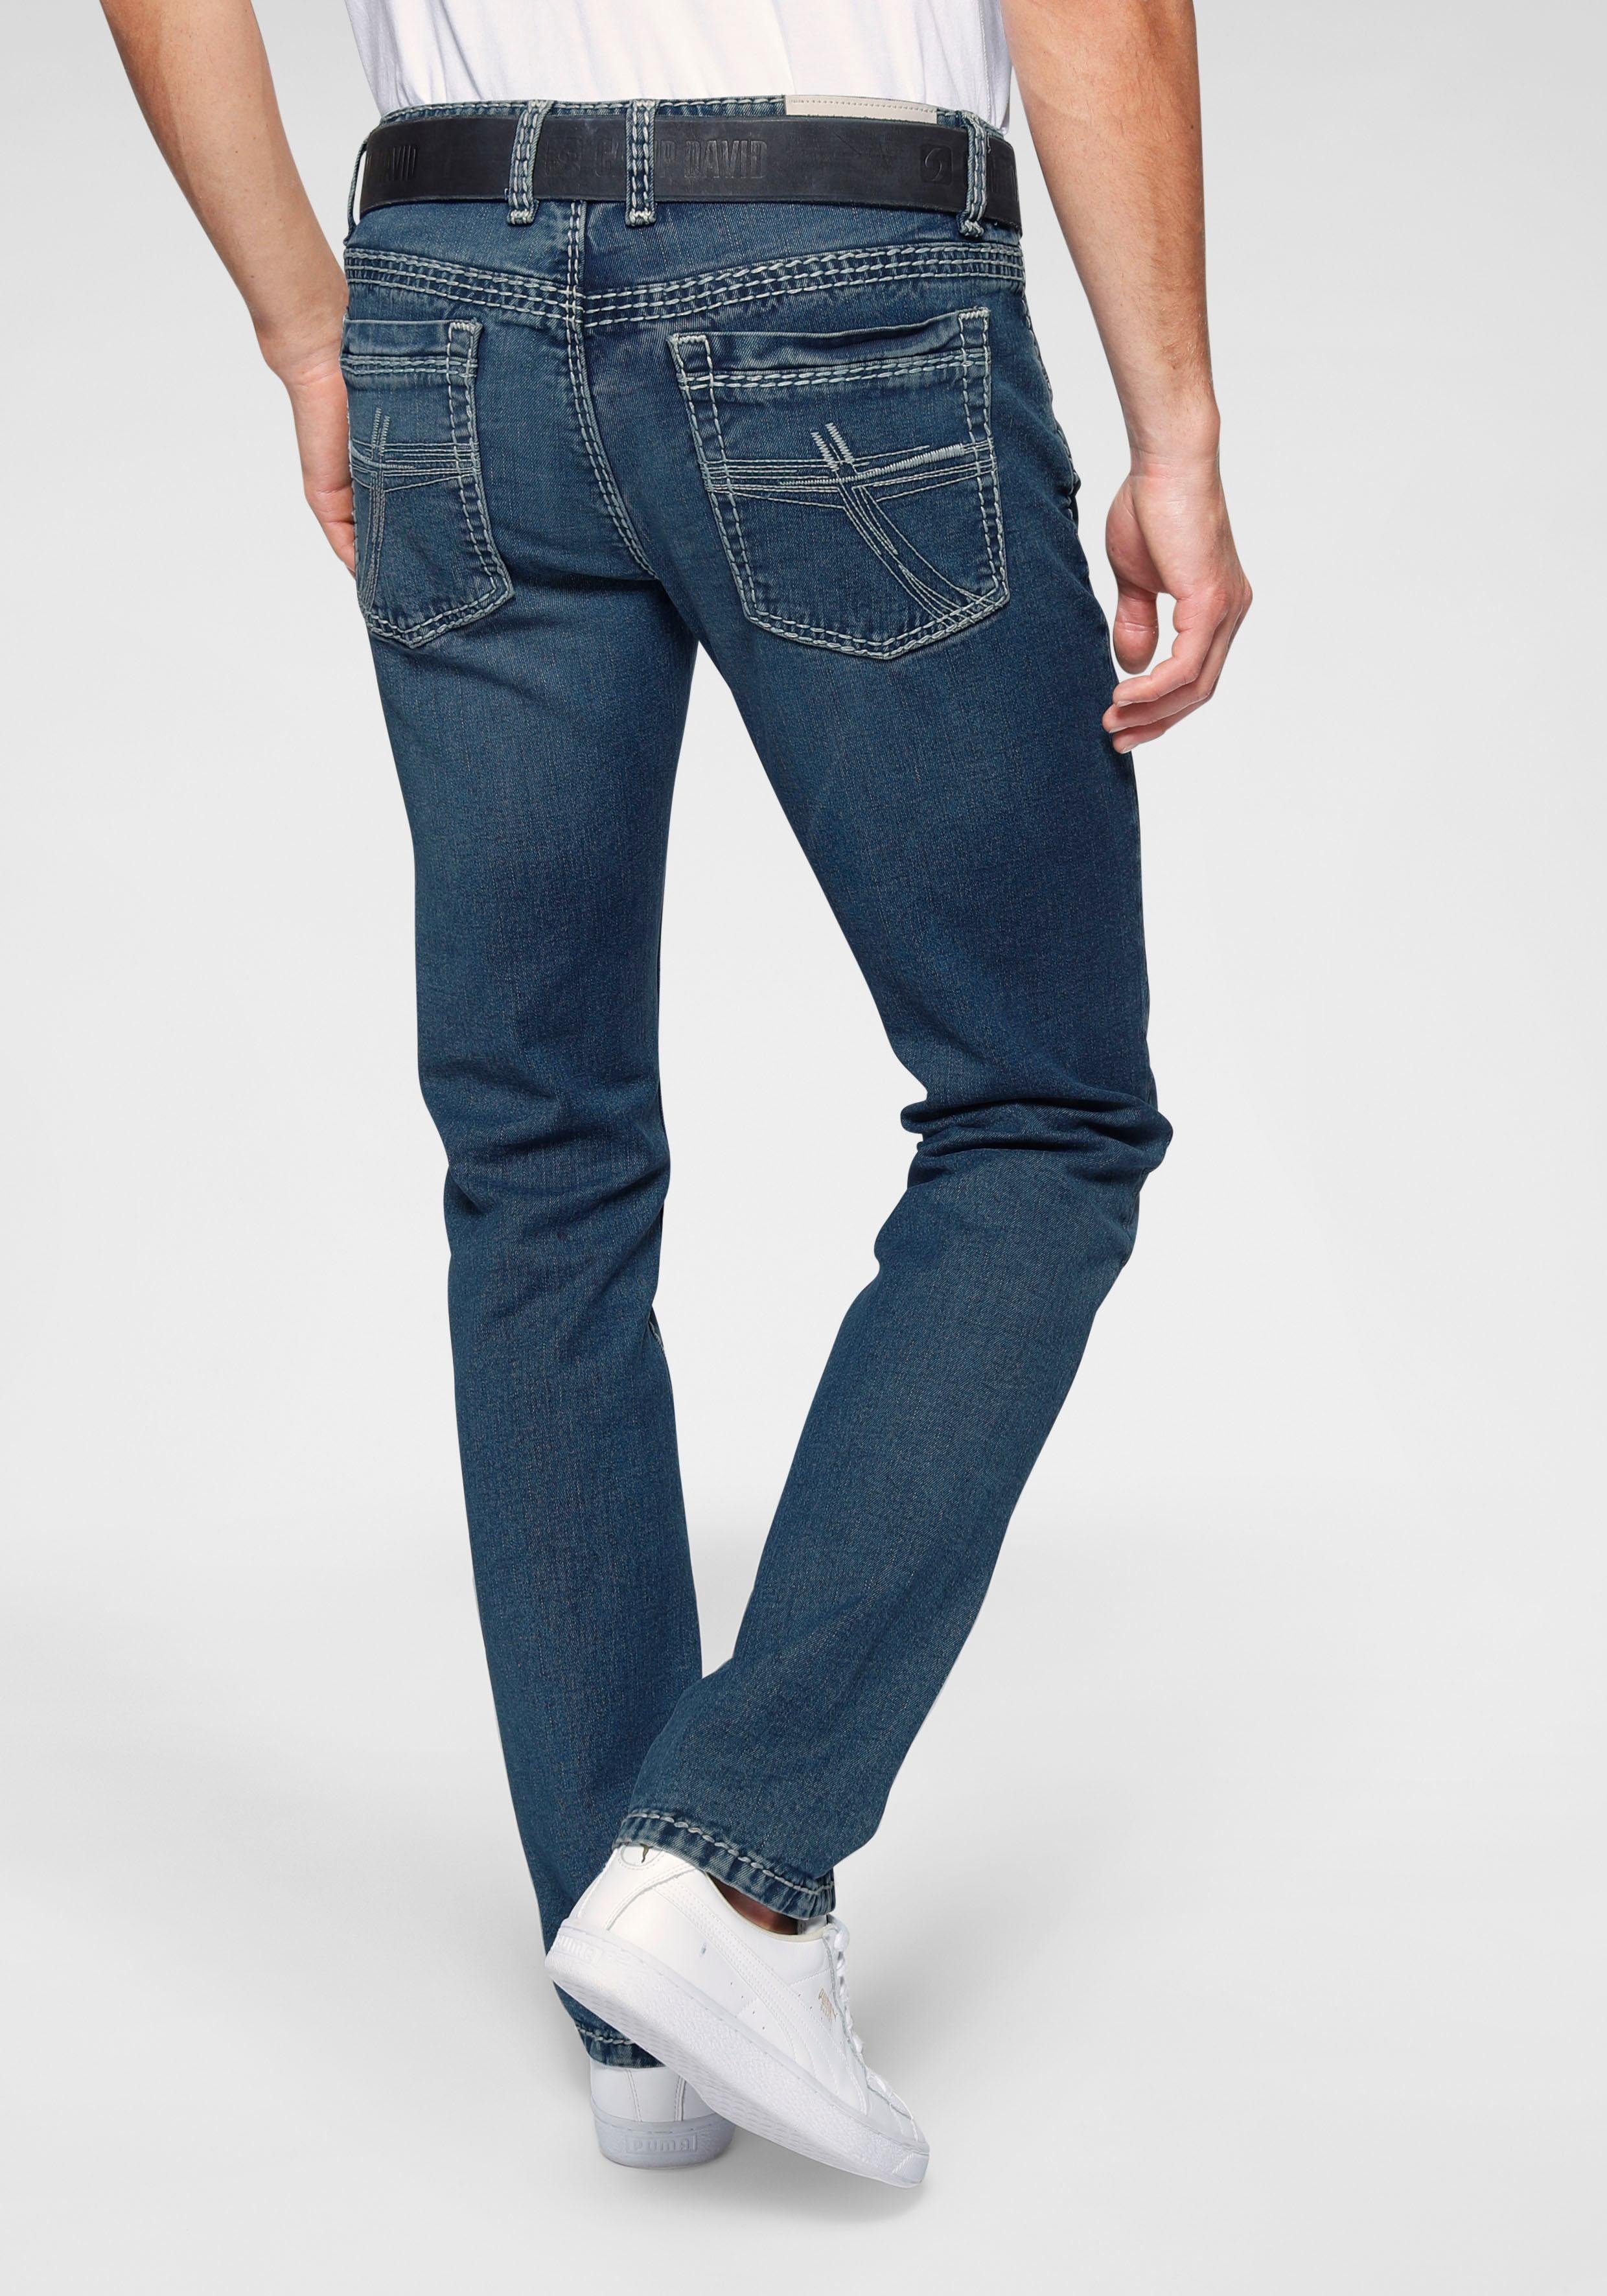 CAMP DAVID 5-Pocket-Jeans »RO:BI:S622«, Hoher Baumwollanteil vermittelt  guten Tragekomfort online kaufen | OTTO